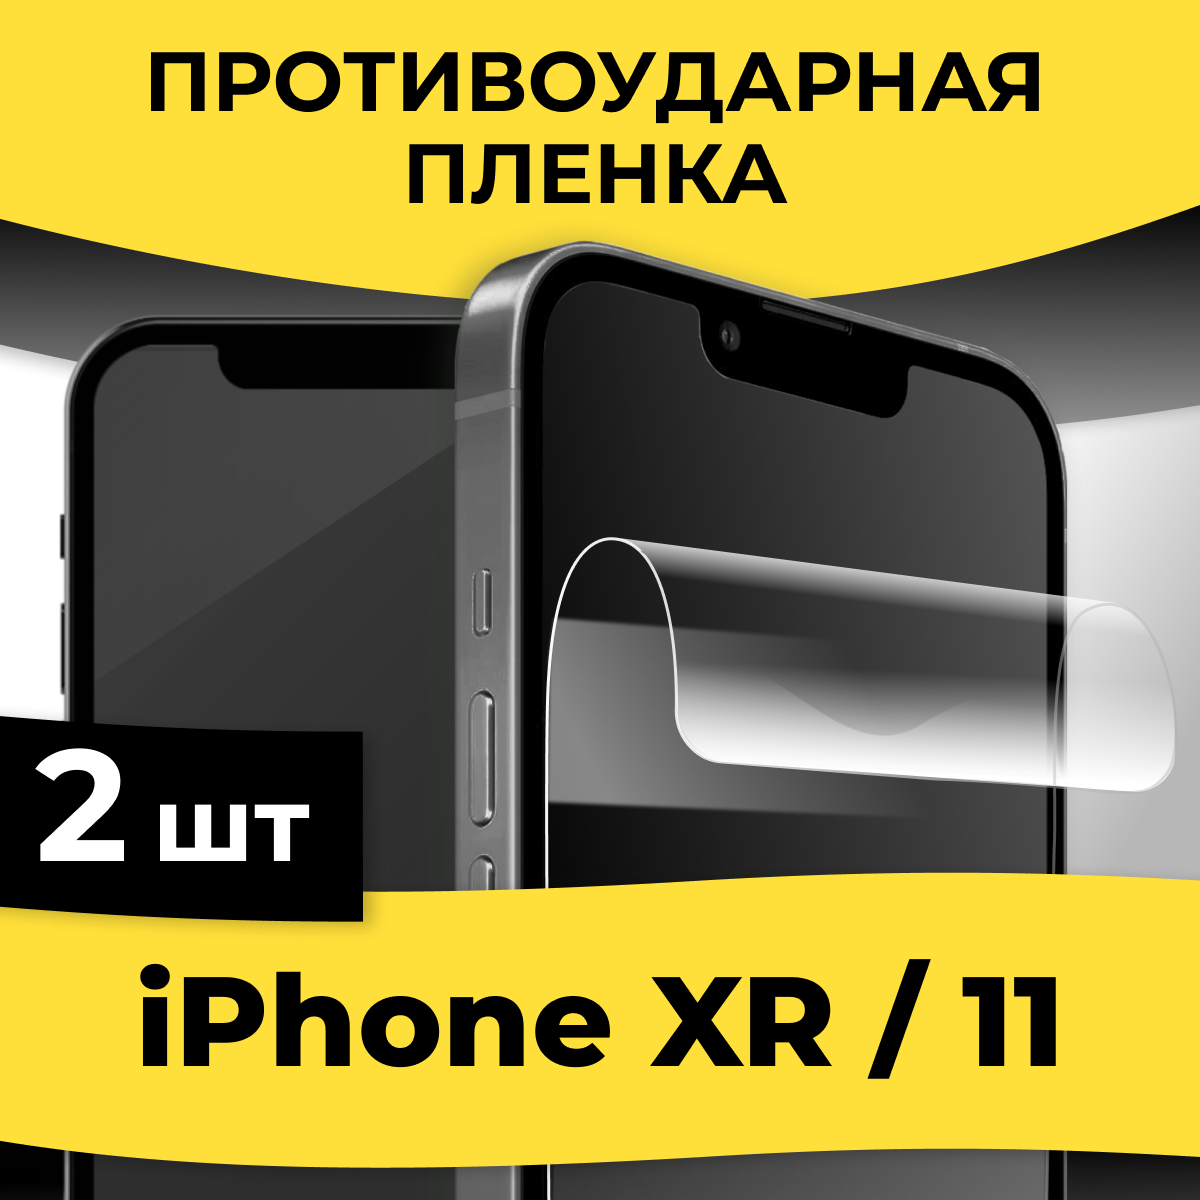 Комплект 2 шт. Гидрогелевая пленка для смартфона Apple iPhone XR / 11 / Защитная пленка на телефон Эпл Айфон ХР / 11 / Глянцевая пленка